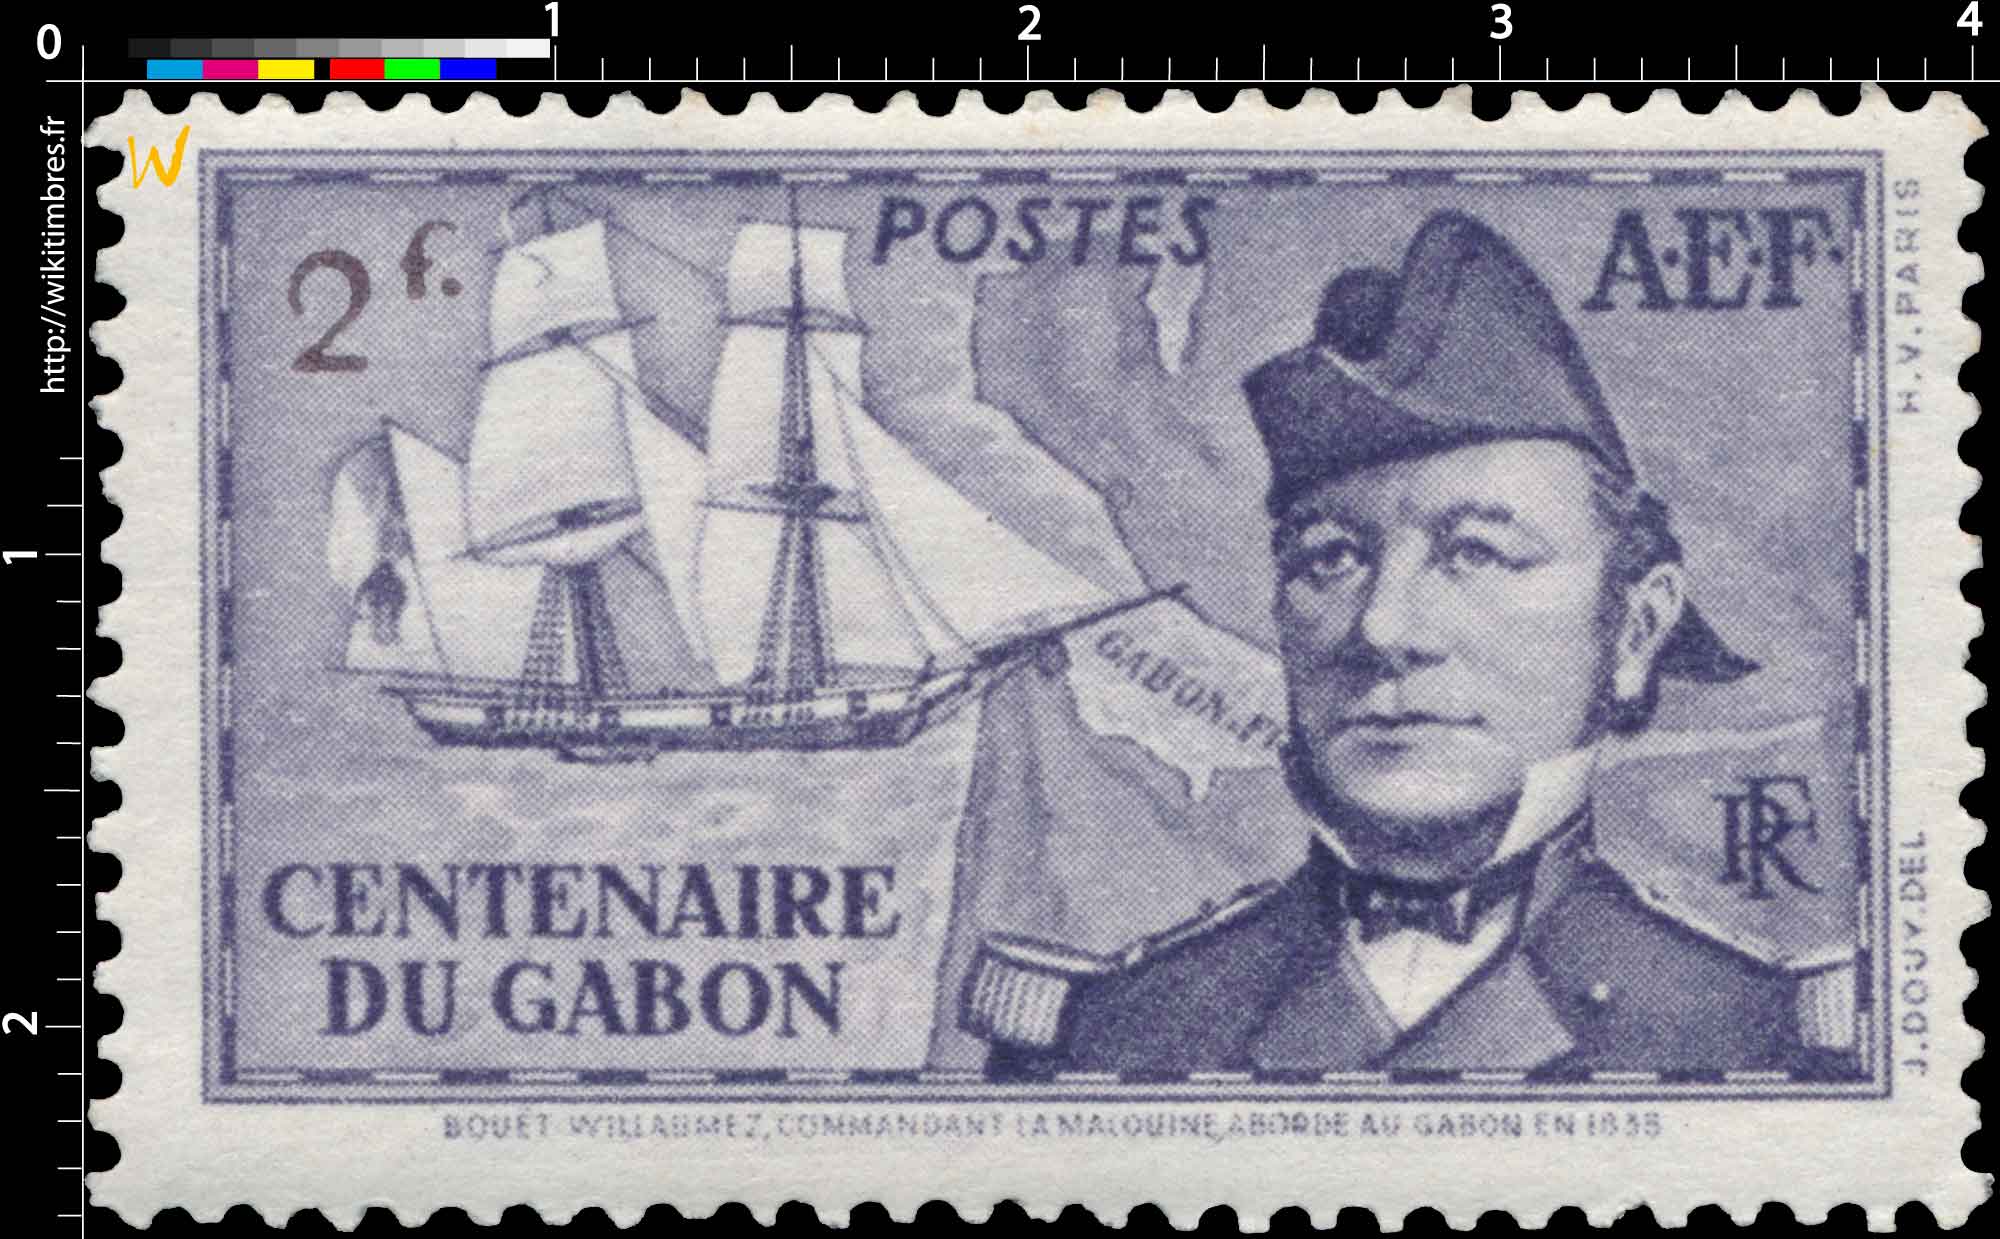 Centenaire du Gabon Bouet-Willaumez commandant la Malouine aborde au Gabon en 1839